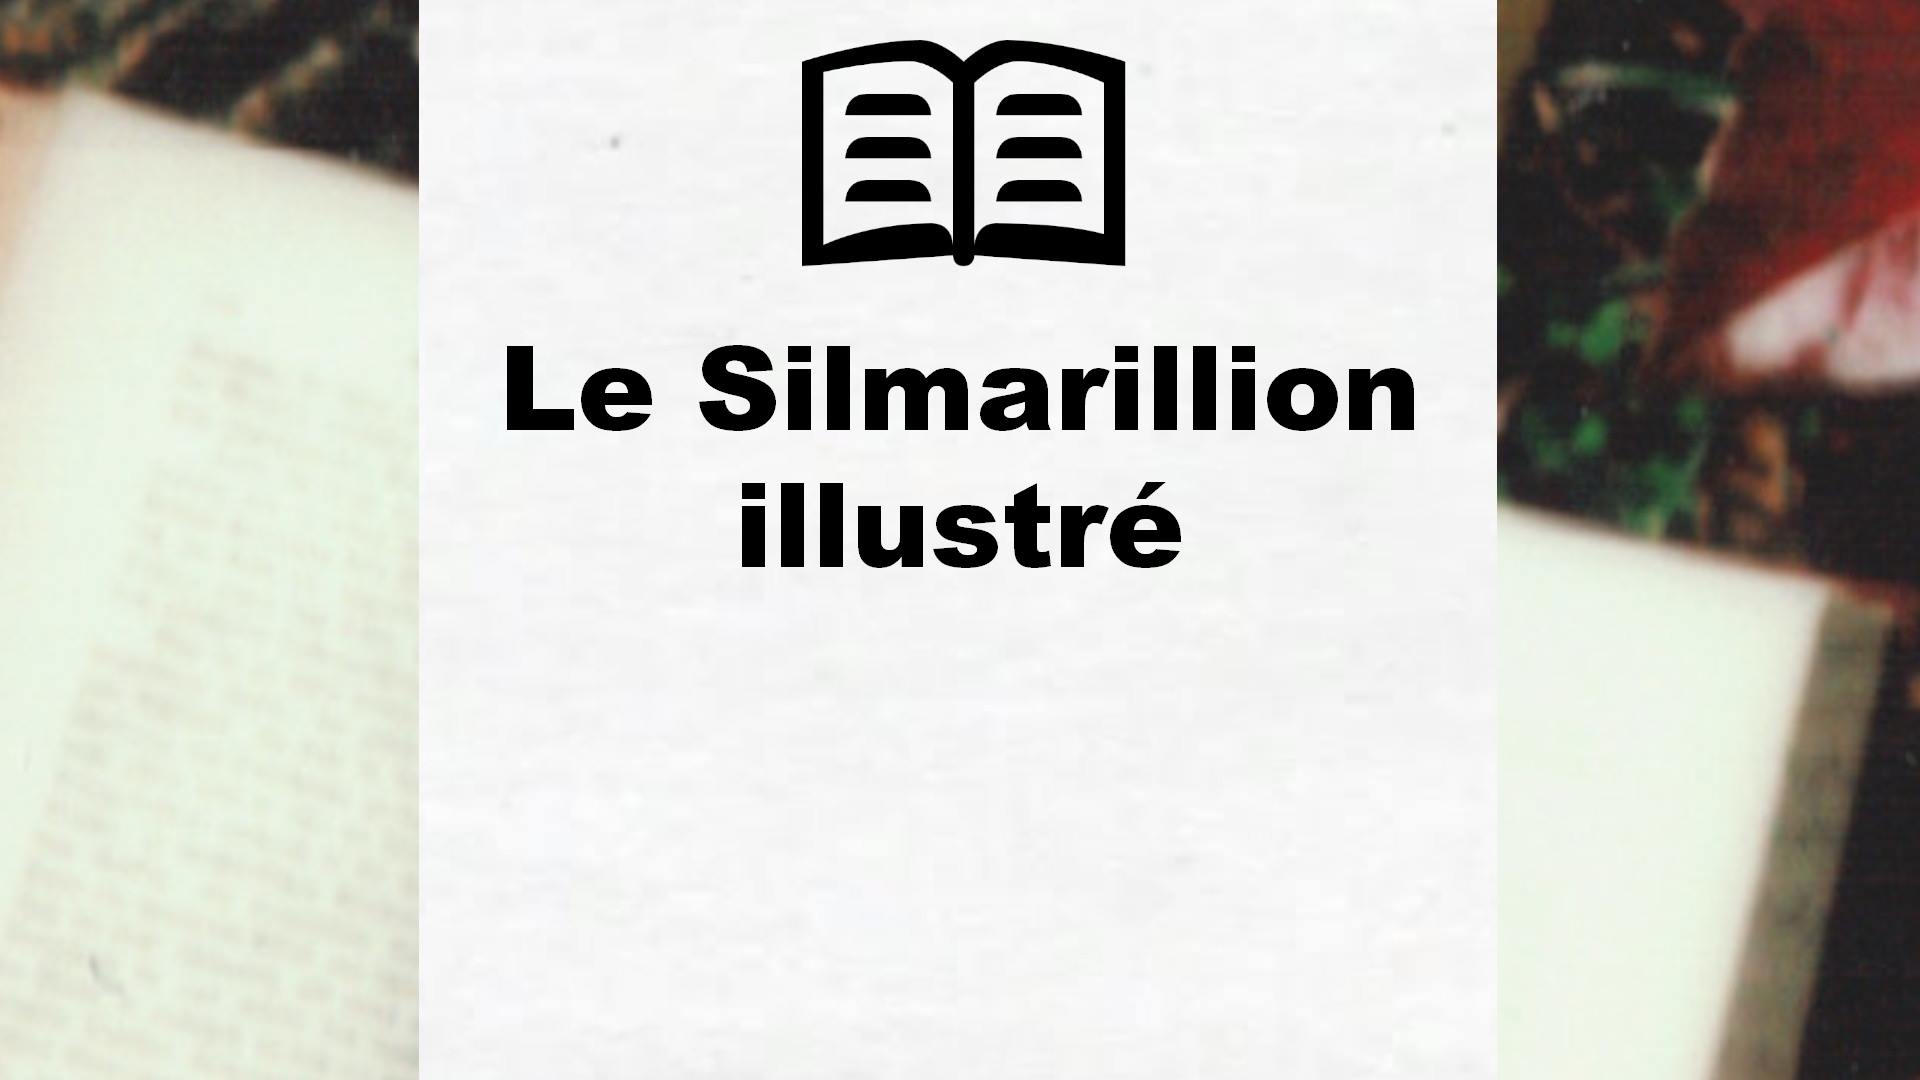 Le Silmarillion illustré – Critique